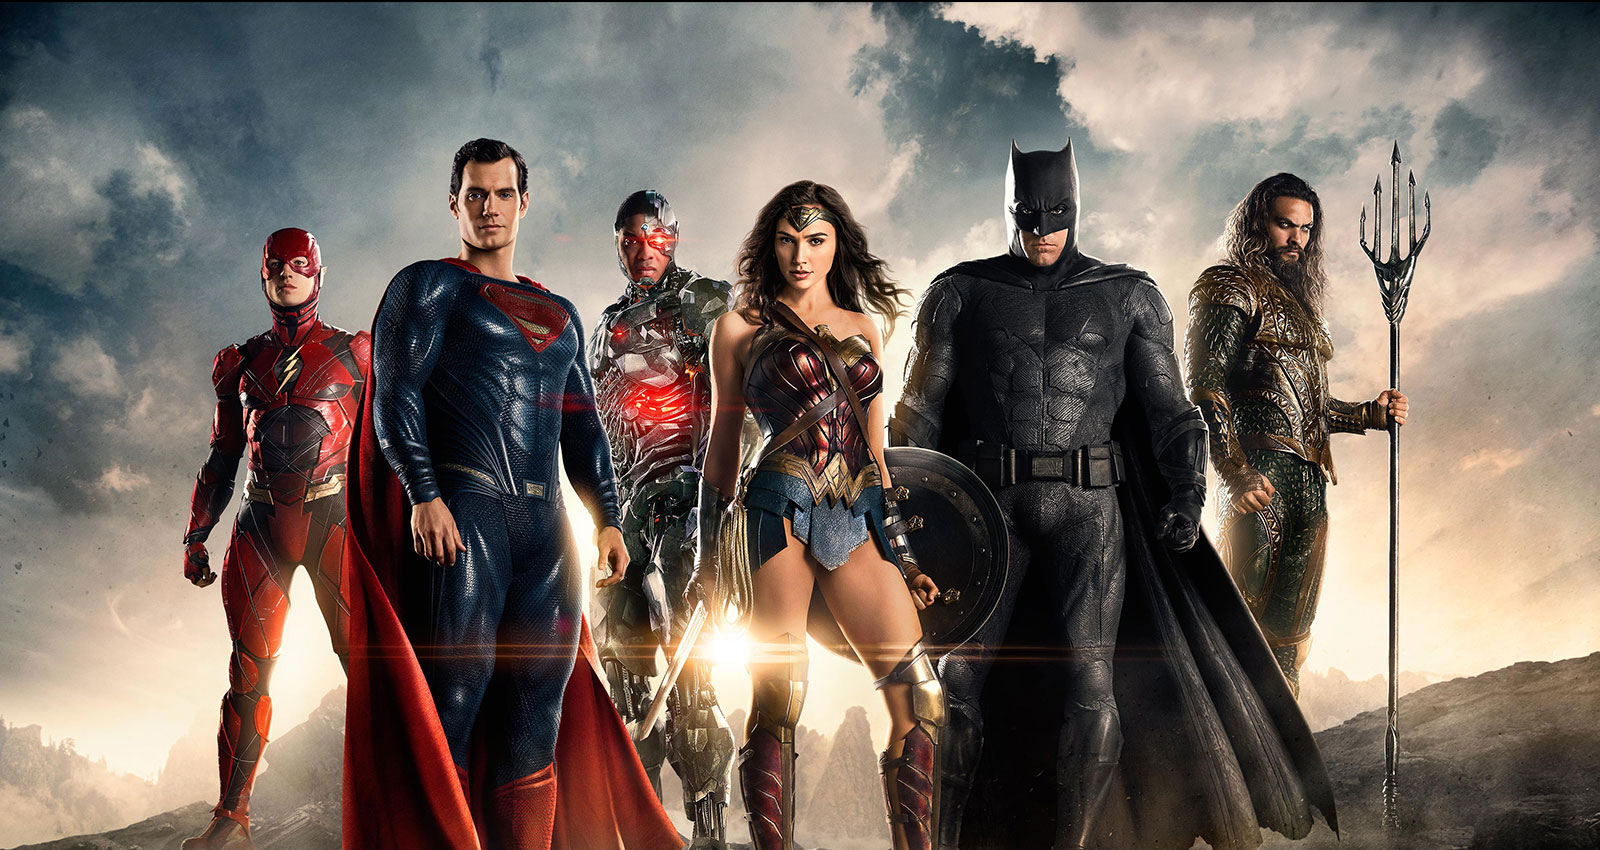  La Liga de la Justicia de Zack Snyder in - Espana 